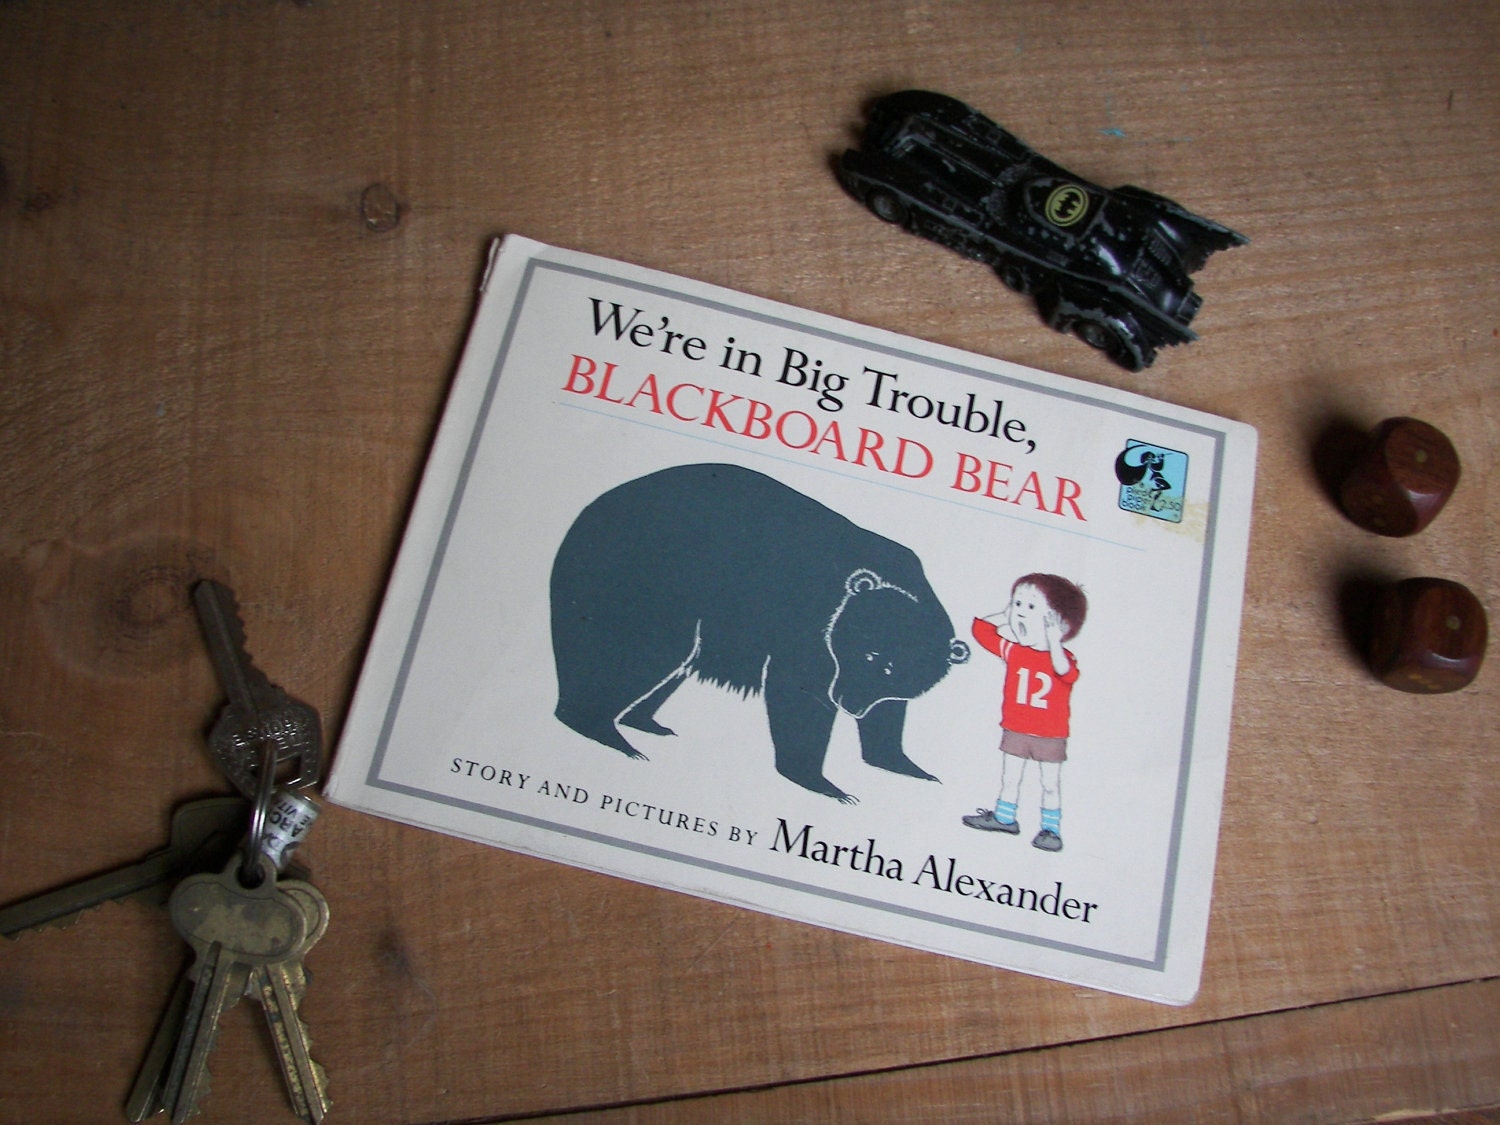 We're in Big Trouble, Blackboard Bear Martha Alexander